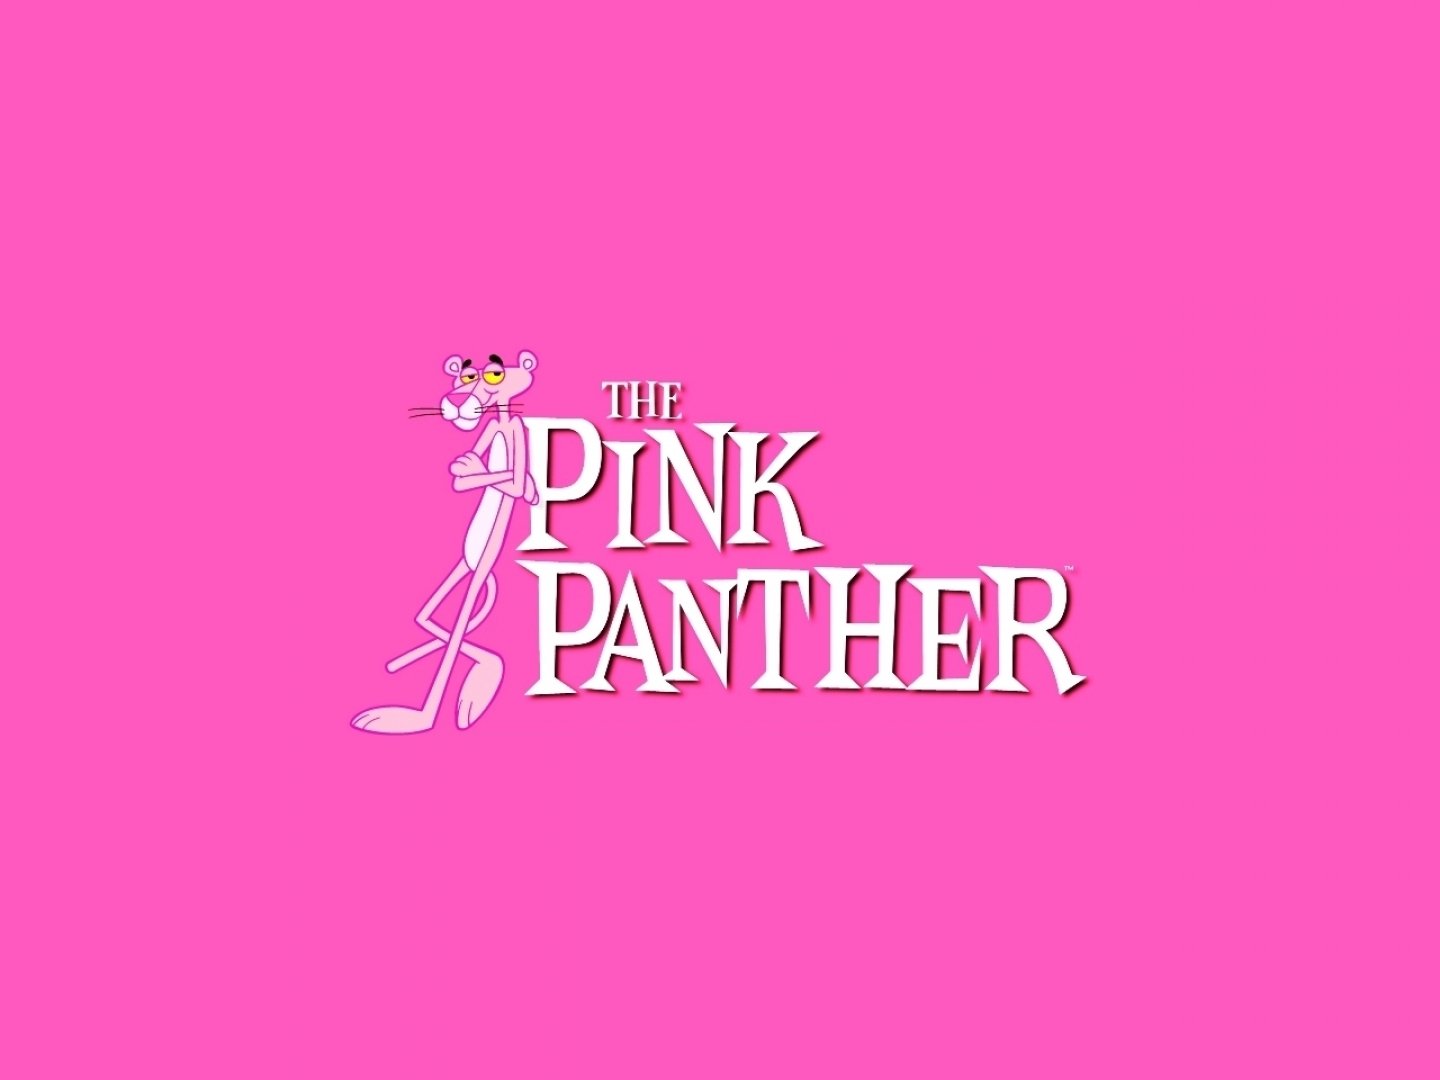 The Pink Panther Show Fondo De Pantalla And Fondo De Escritorio 1440x1080